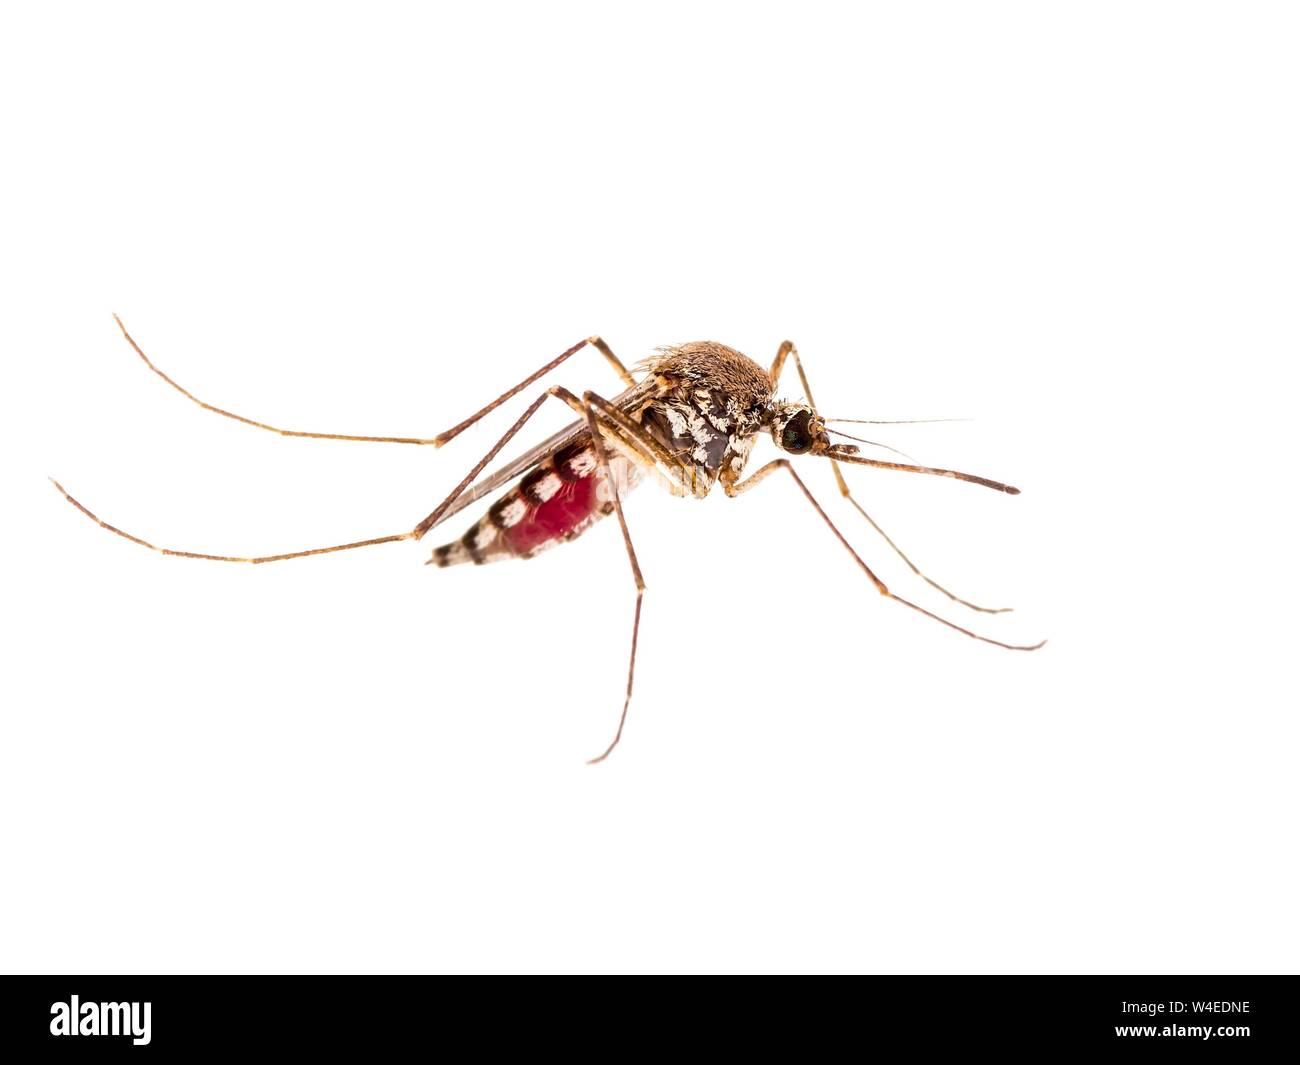 La fiebre amarilla, el paludismo o el mosquito infectado de virus Zika insecto aislado sobre fondo blanco. Foto de stock